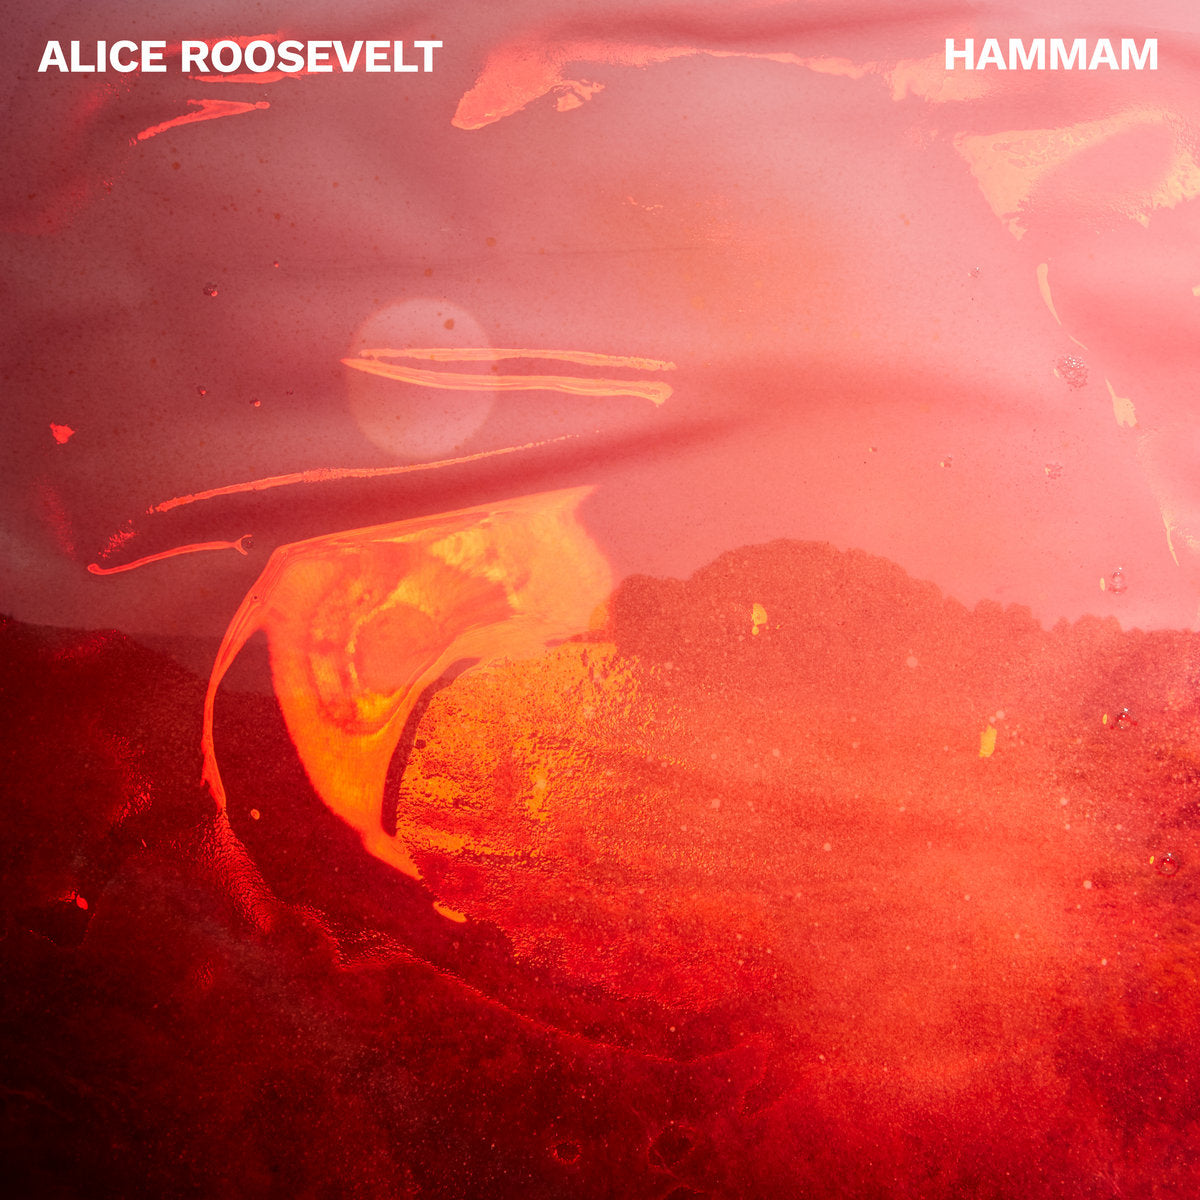 Alice Roosevelt - Hammam - BROKEN 8 RECORDS